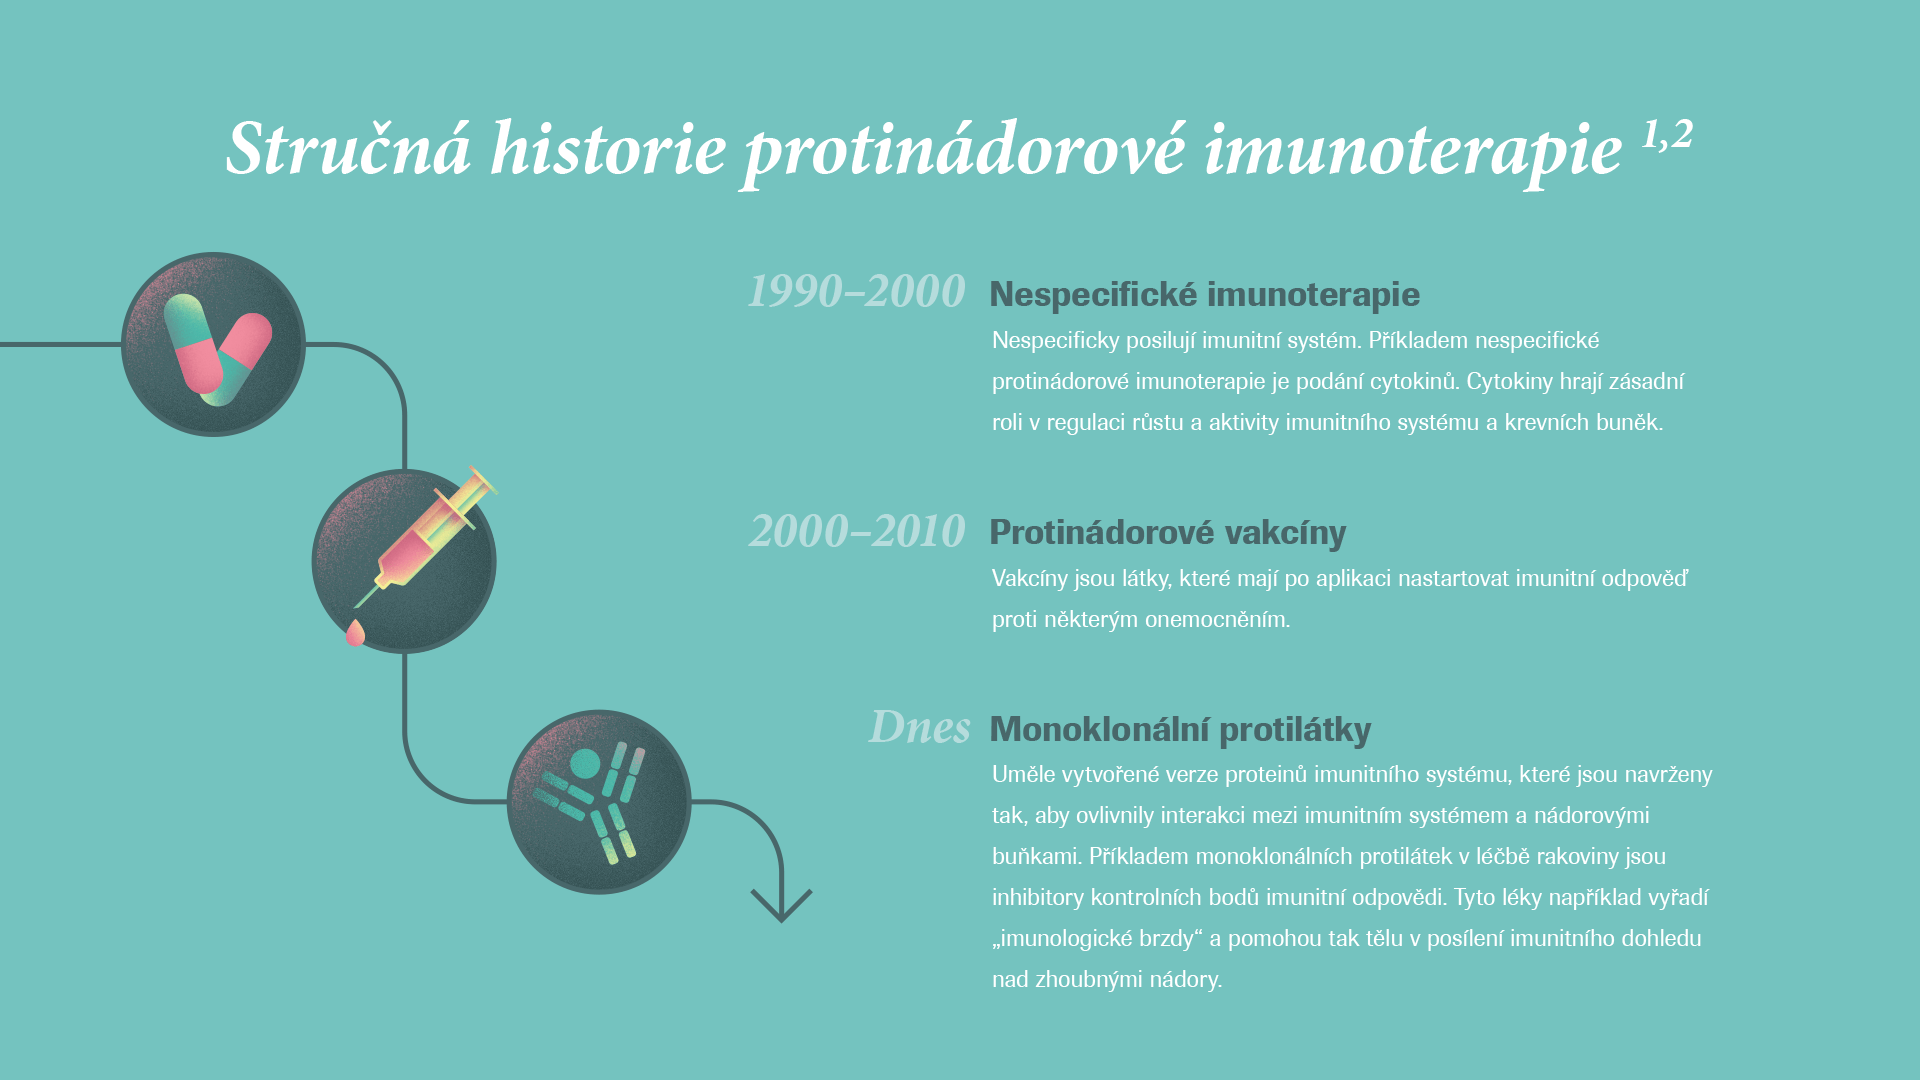 Stručná historie imunoterapie